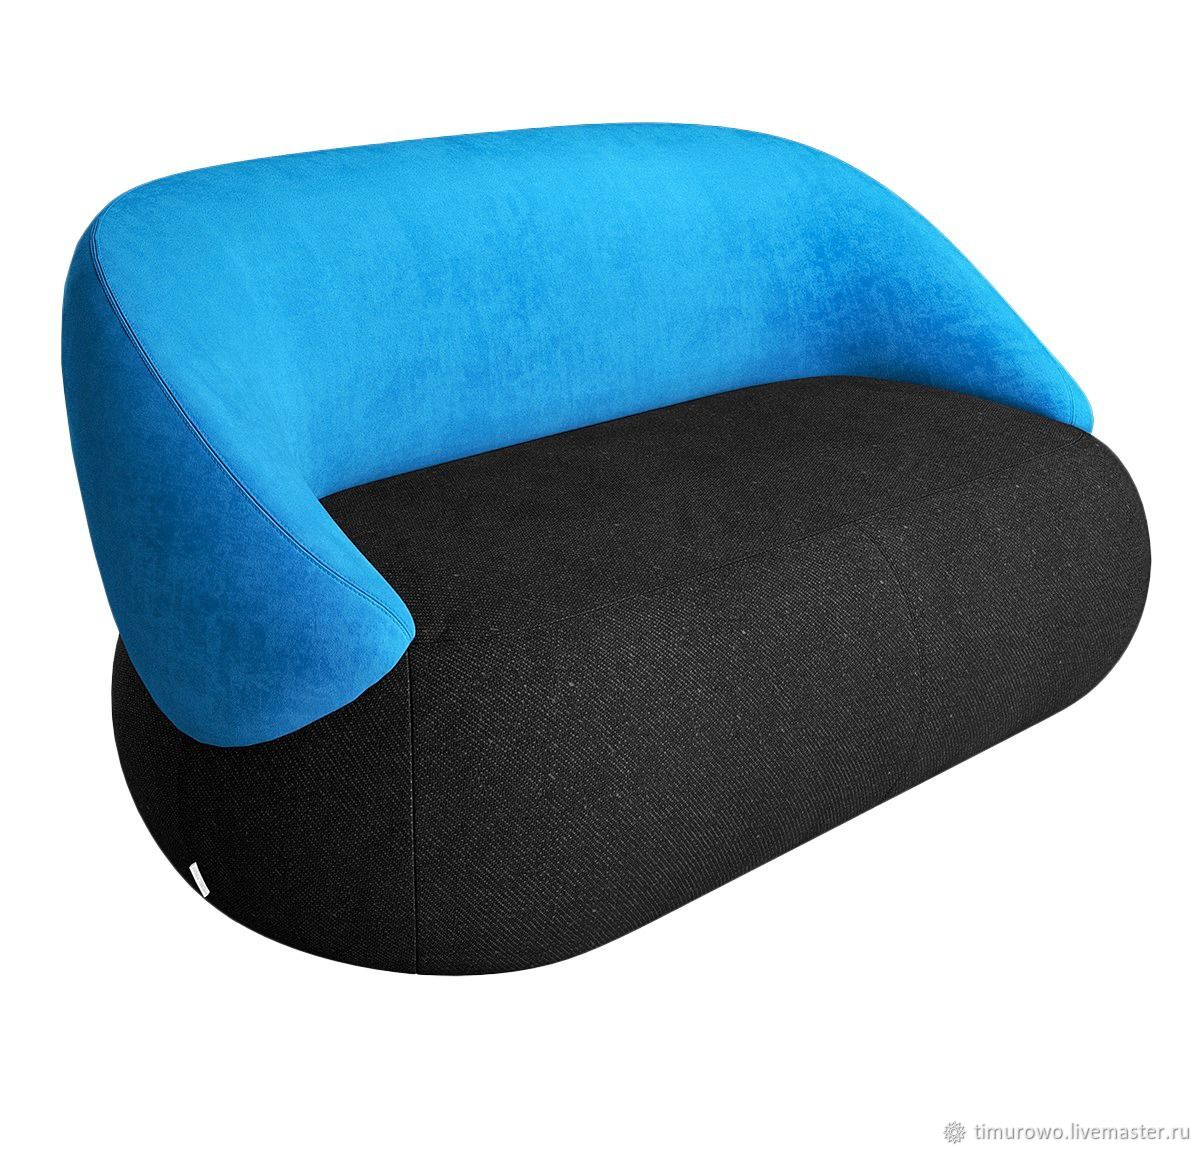 Кресло мягкая мебель синее